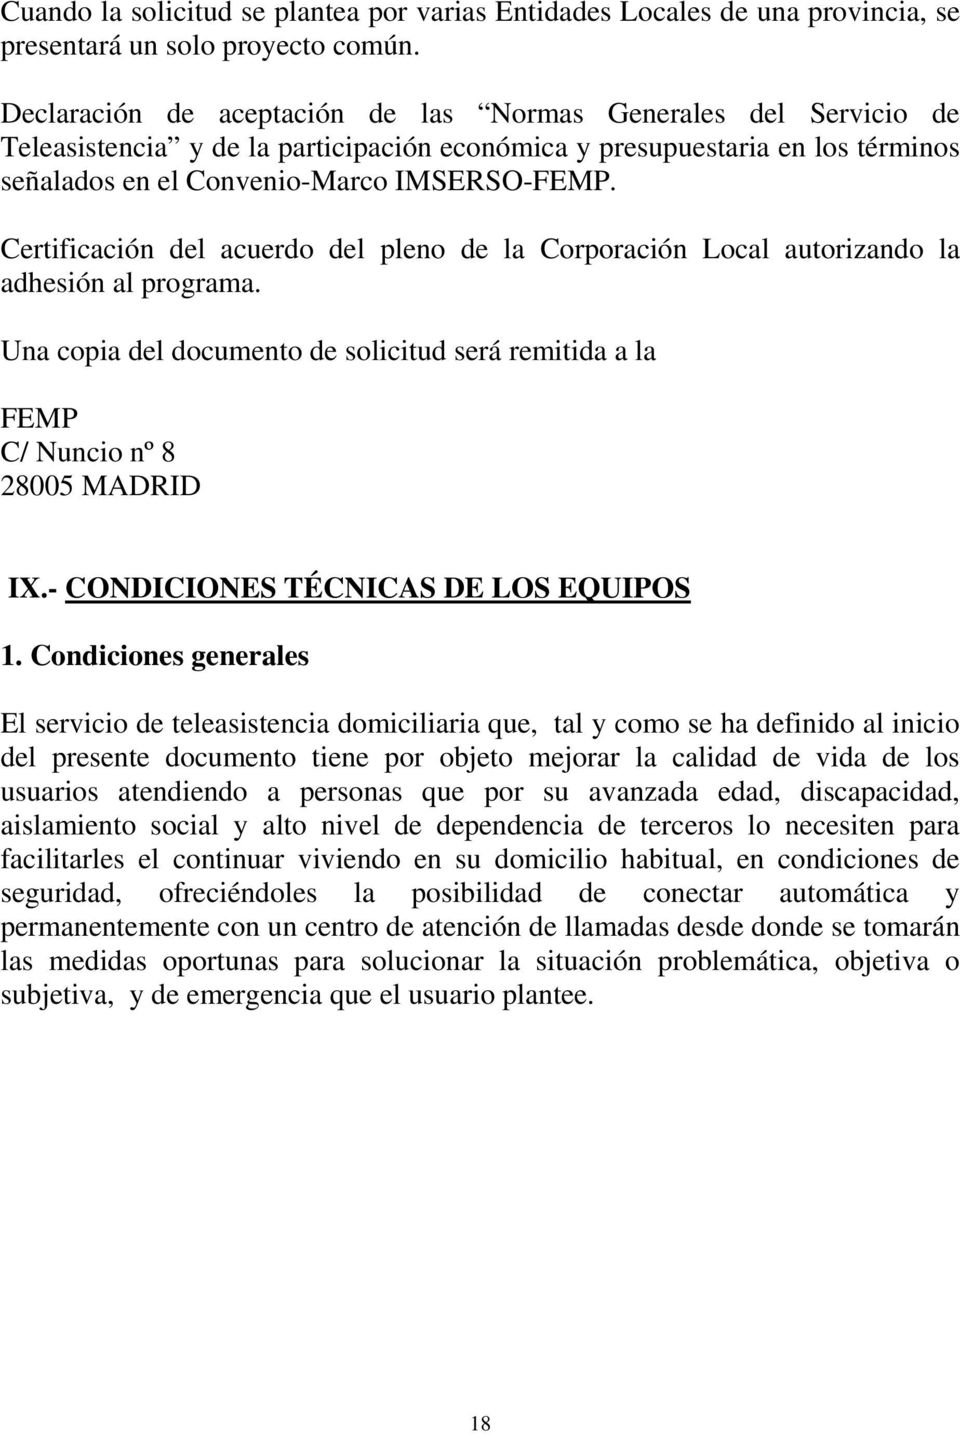 Certificación del acuerdo del pleno de la Corporación Local autorizando la adhesión al programa. Una copia del documento de solicitud será remitida a la FEMP C/ Nuncio nº 8 28005 MADRID IX.